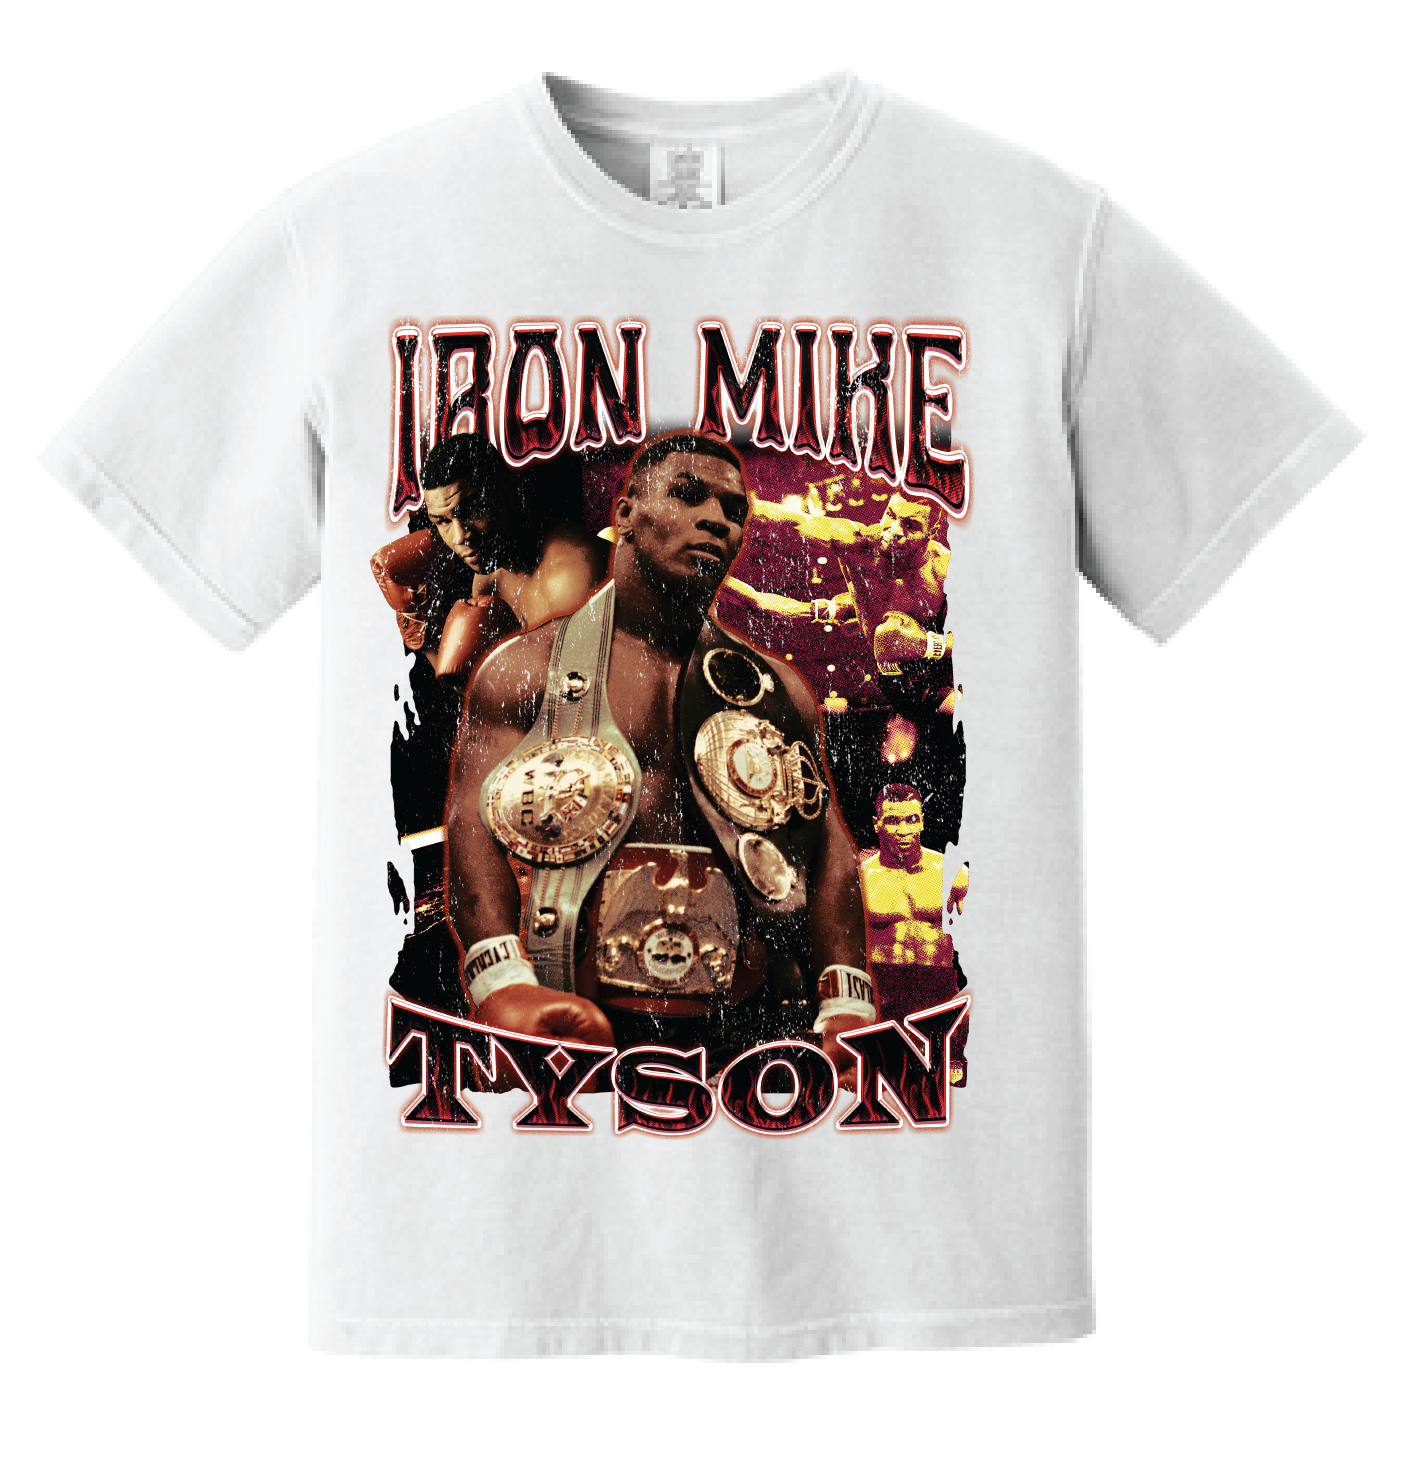 Vintage Iron Mike Tyson T-Shirt - Retro Boxing Tee